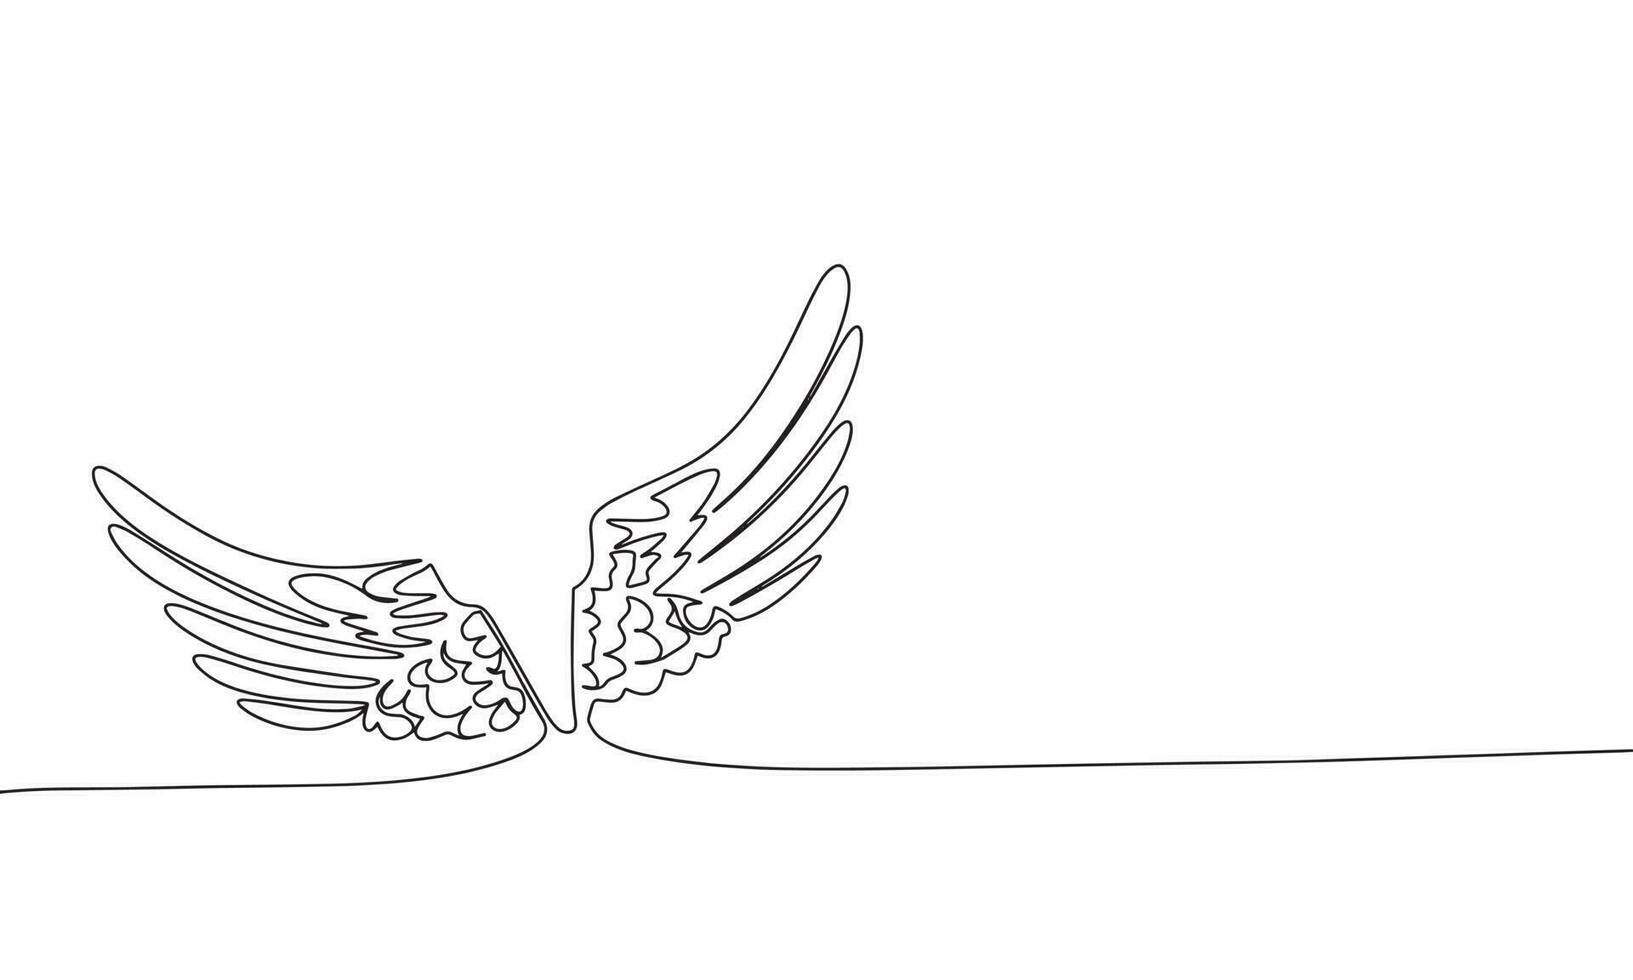 asas do anjo contínuo linha desenhando elemento isolado em branco fundo para decorativo elemento. vetor ilustração do asas dentro na moda esboço estilo.